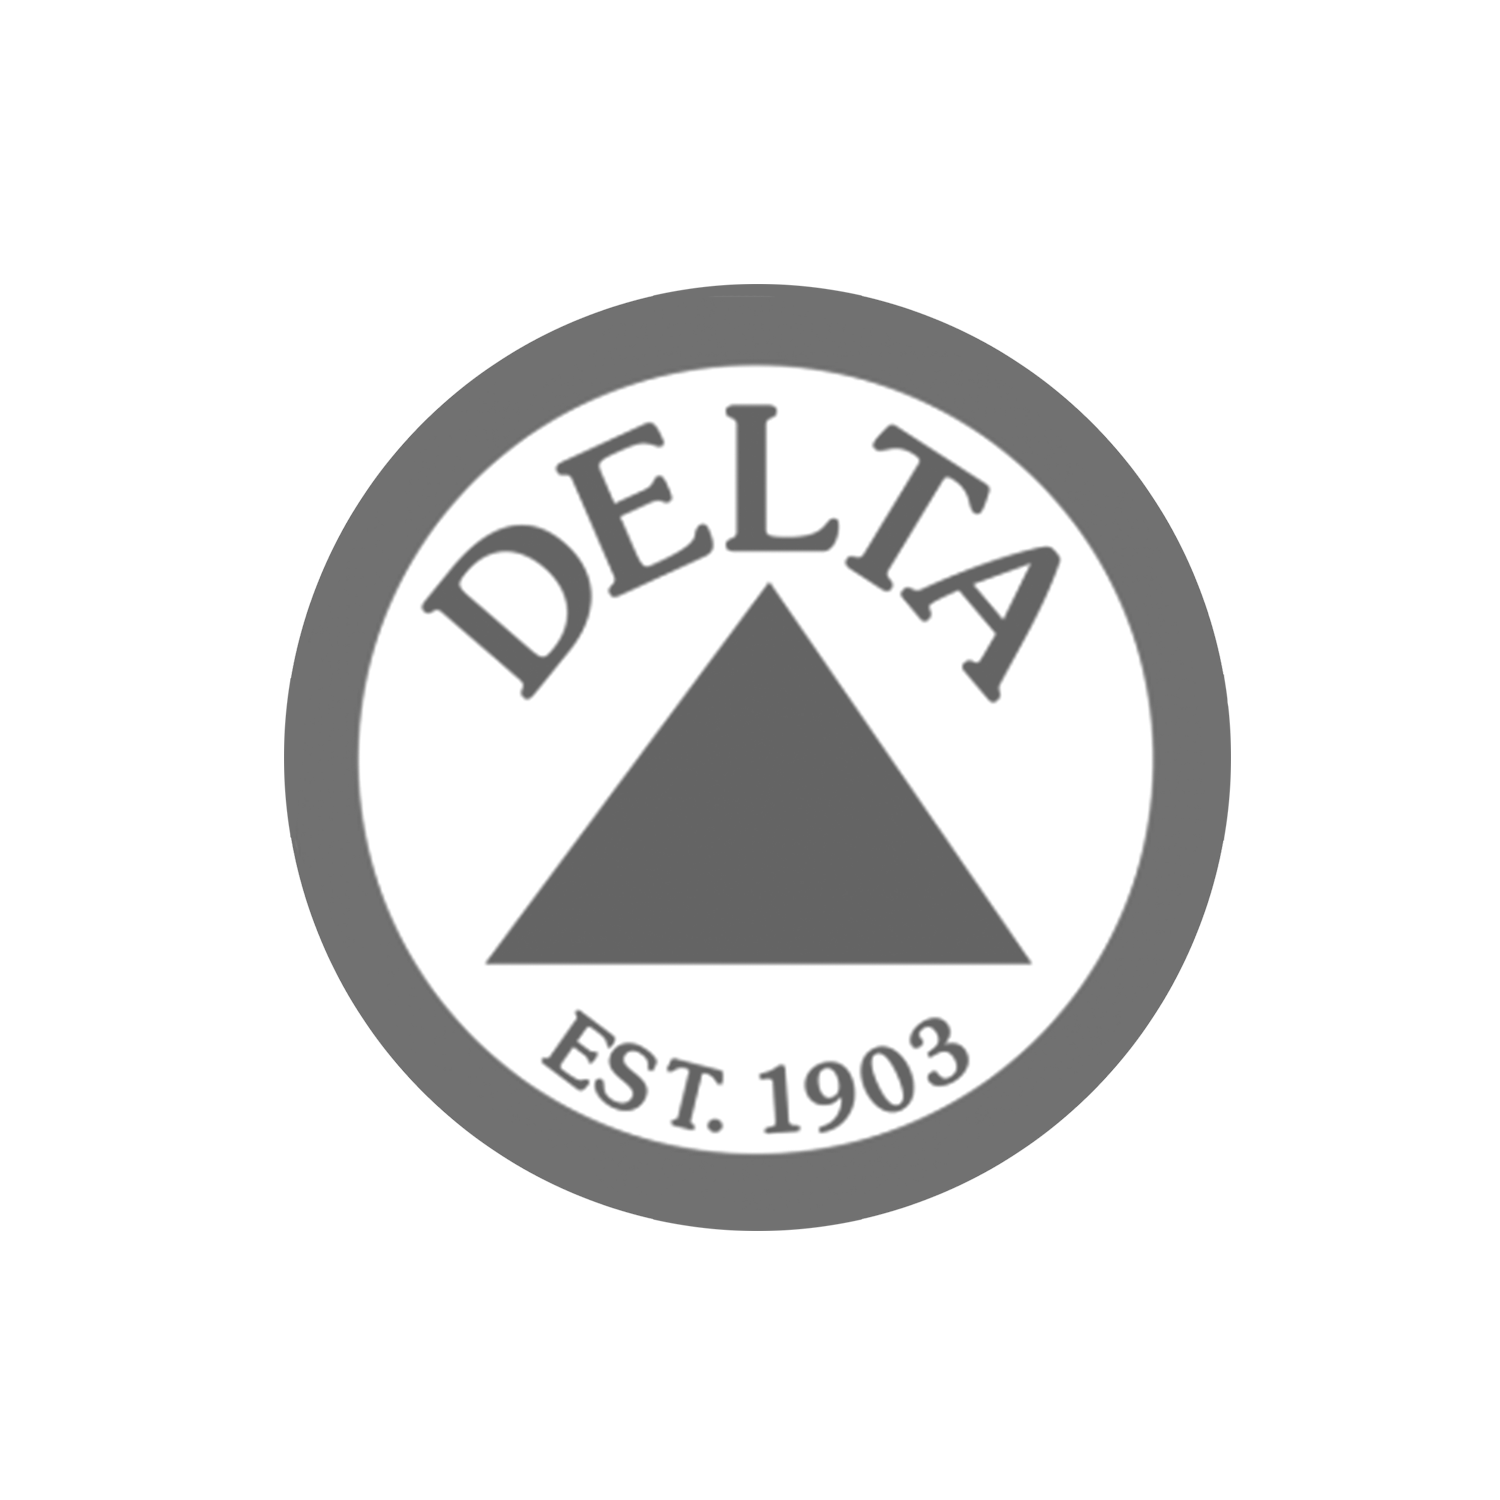 Delta.png